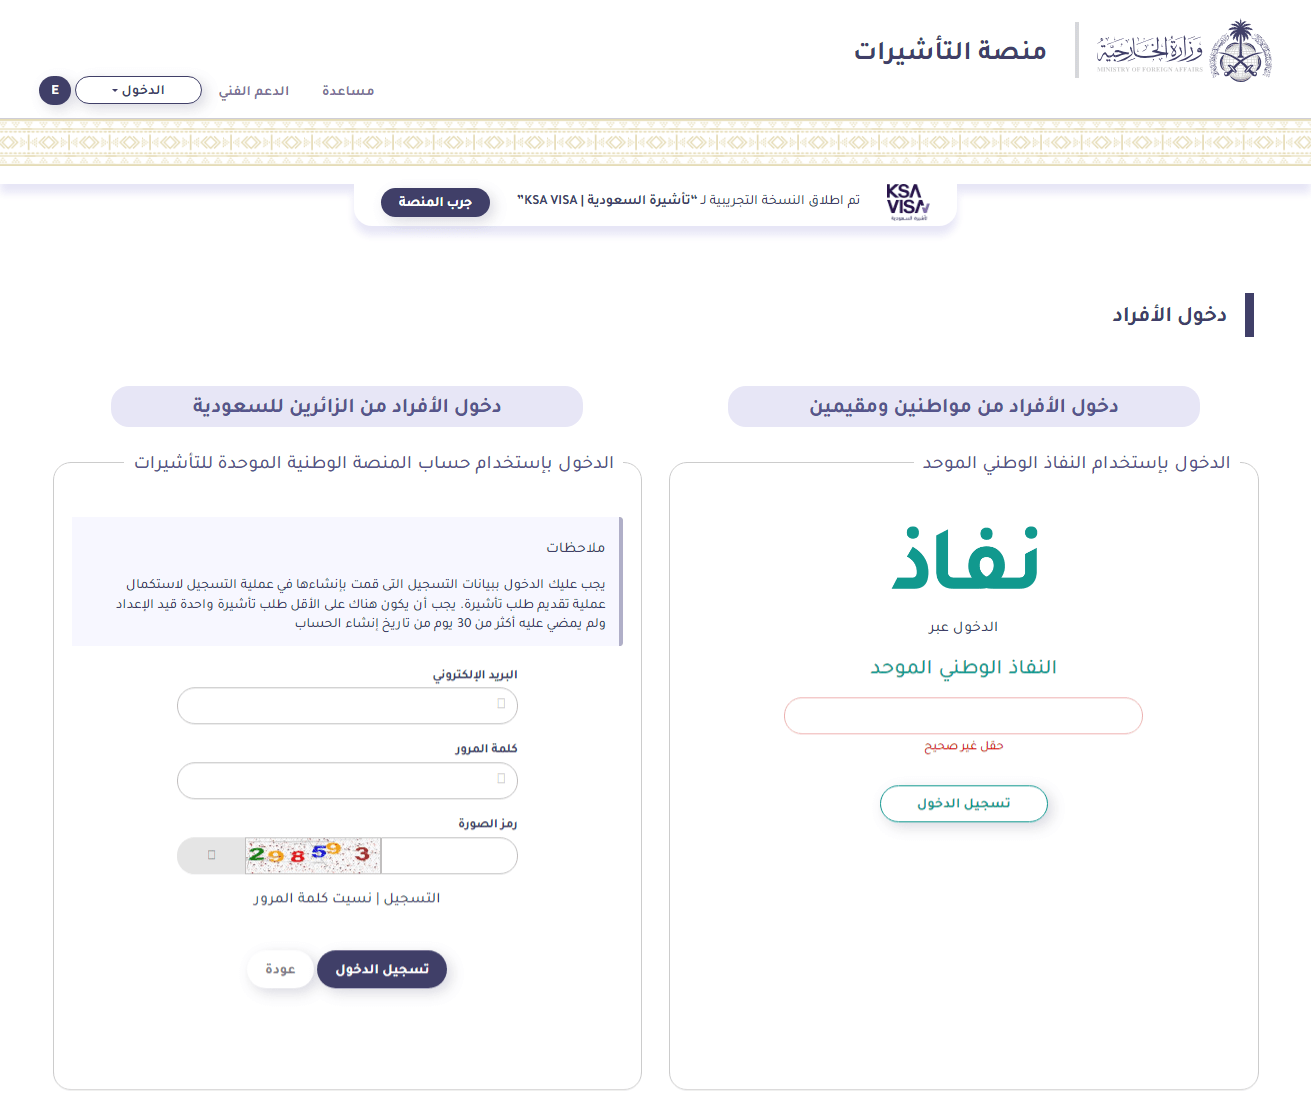 خطوات الاستعلام عن التأشيرة برقم الجواز عبر منصة إنجاز السعودية - تسجيل الدخول إلى منصة إنجاز أو إنشاء حساب على المنصة